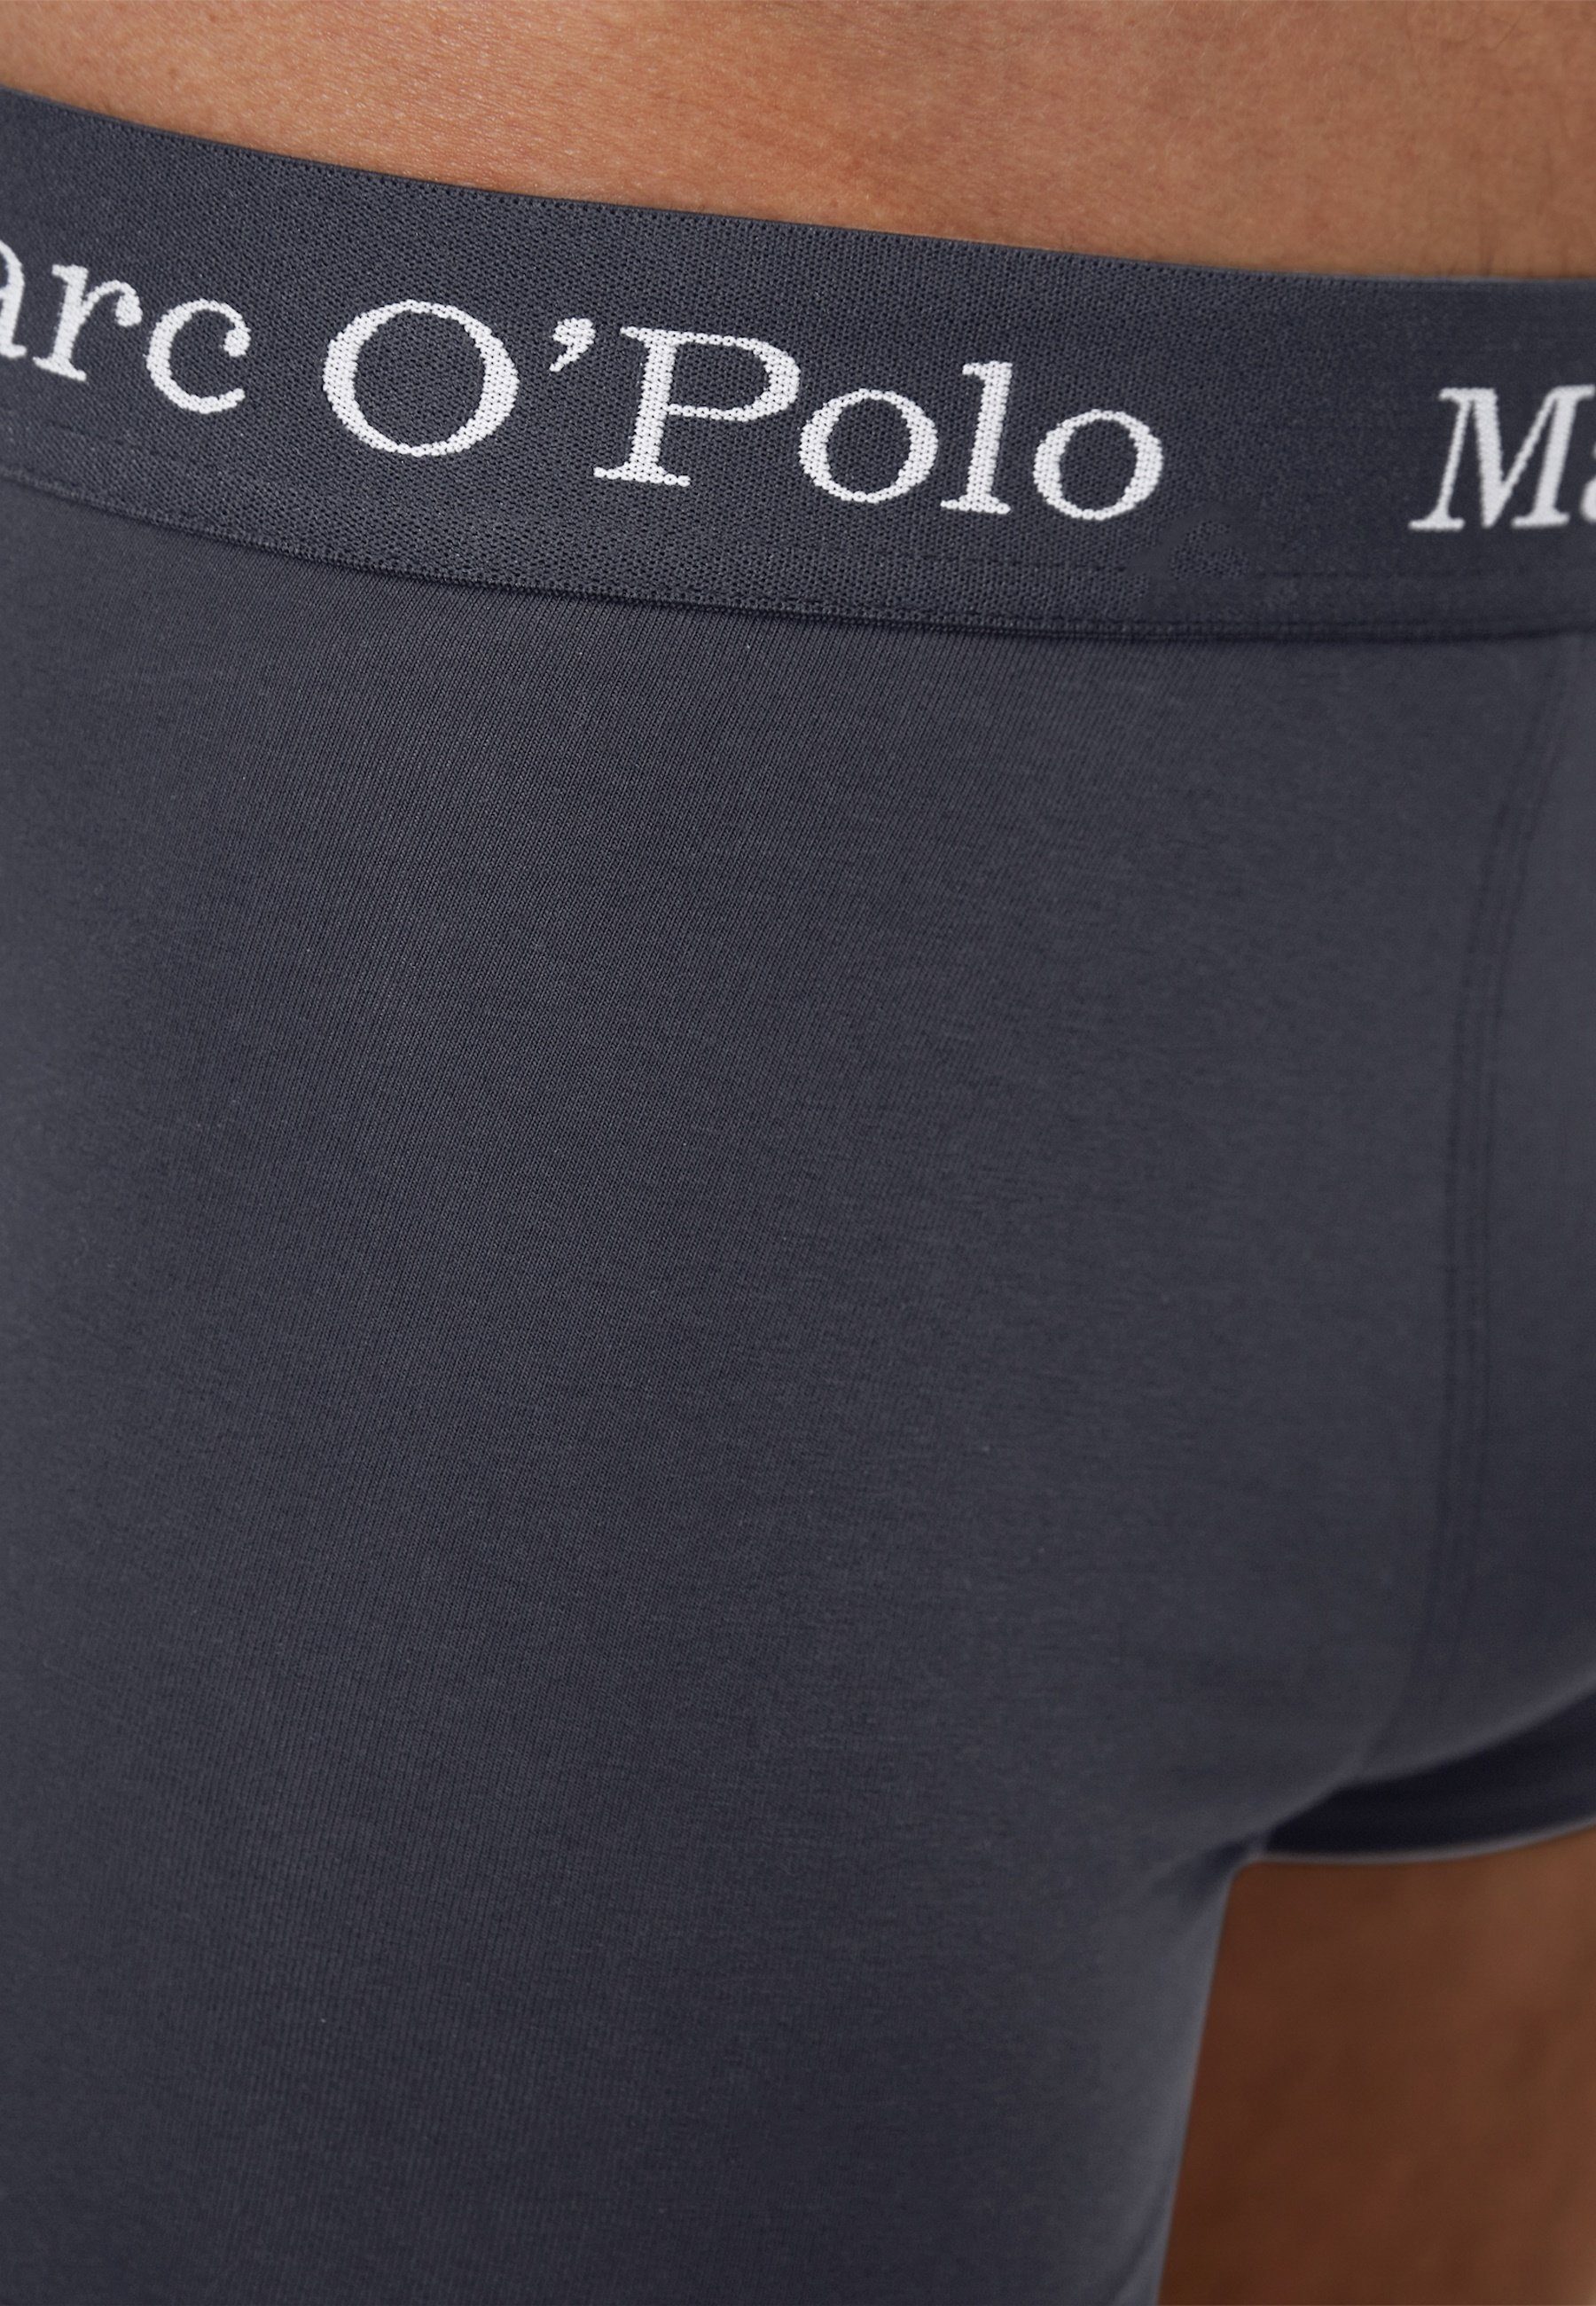 Boxershorts Navy/Grey Unterhosen Boxershorts Fünferpack O'Polo (5-St) Melange Marc Basic